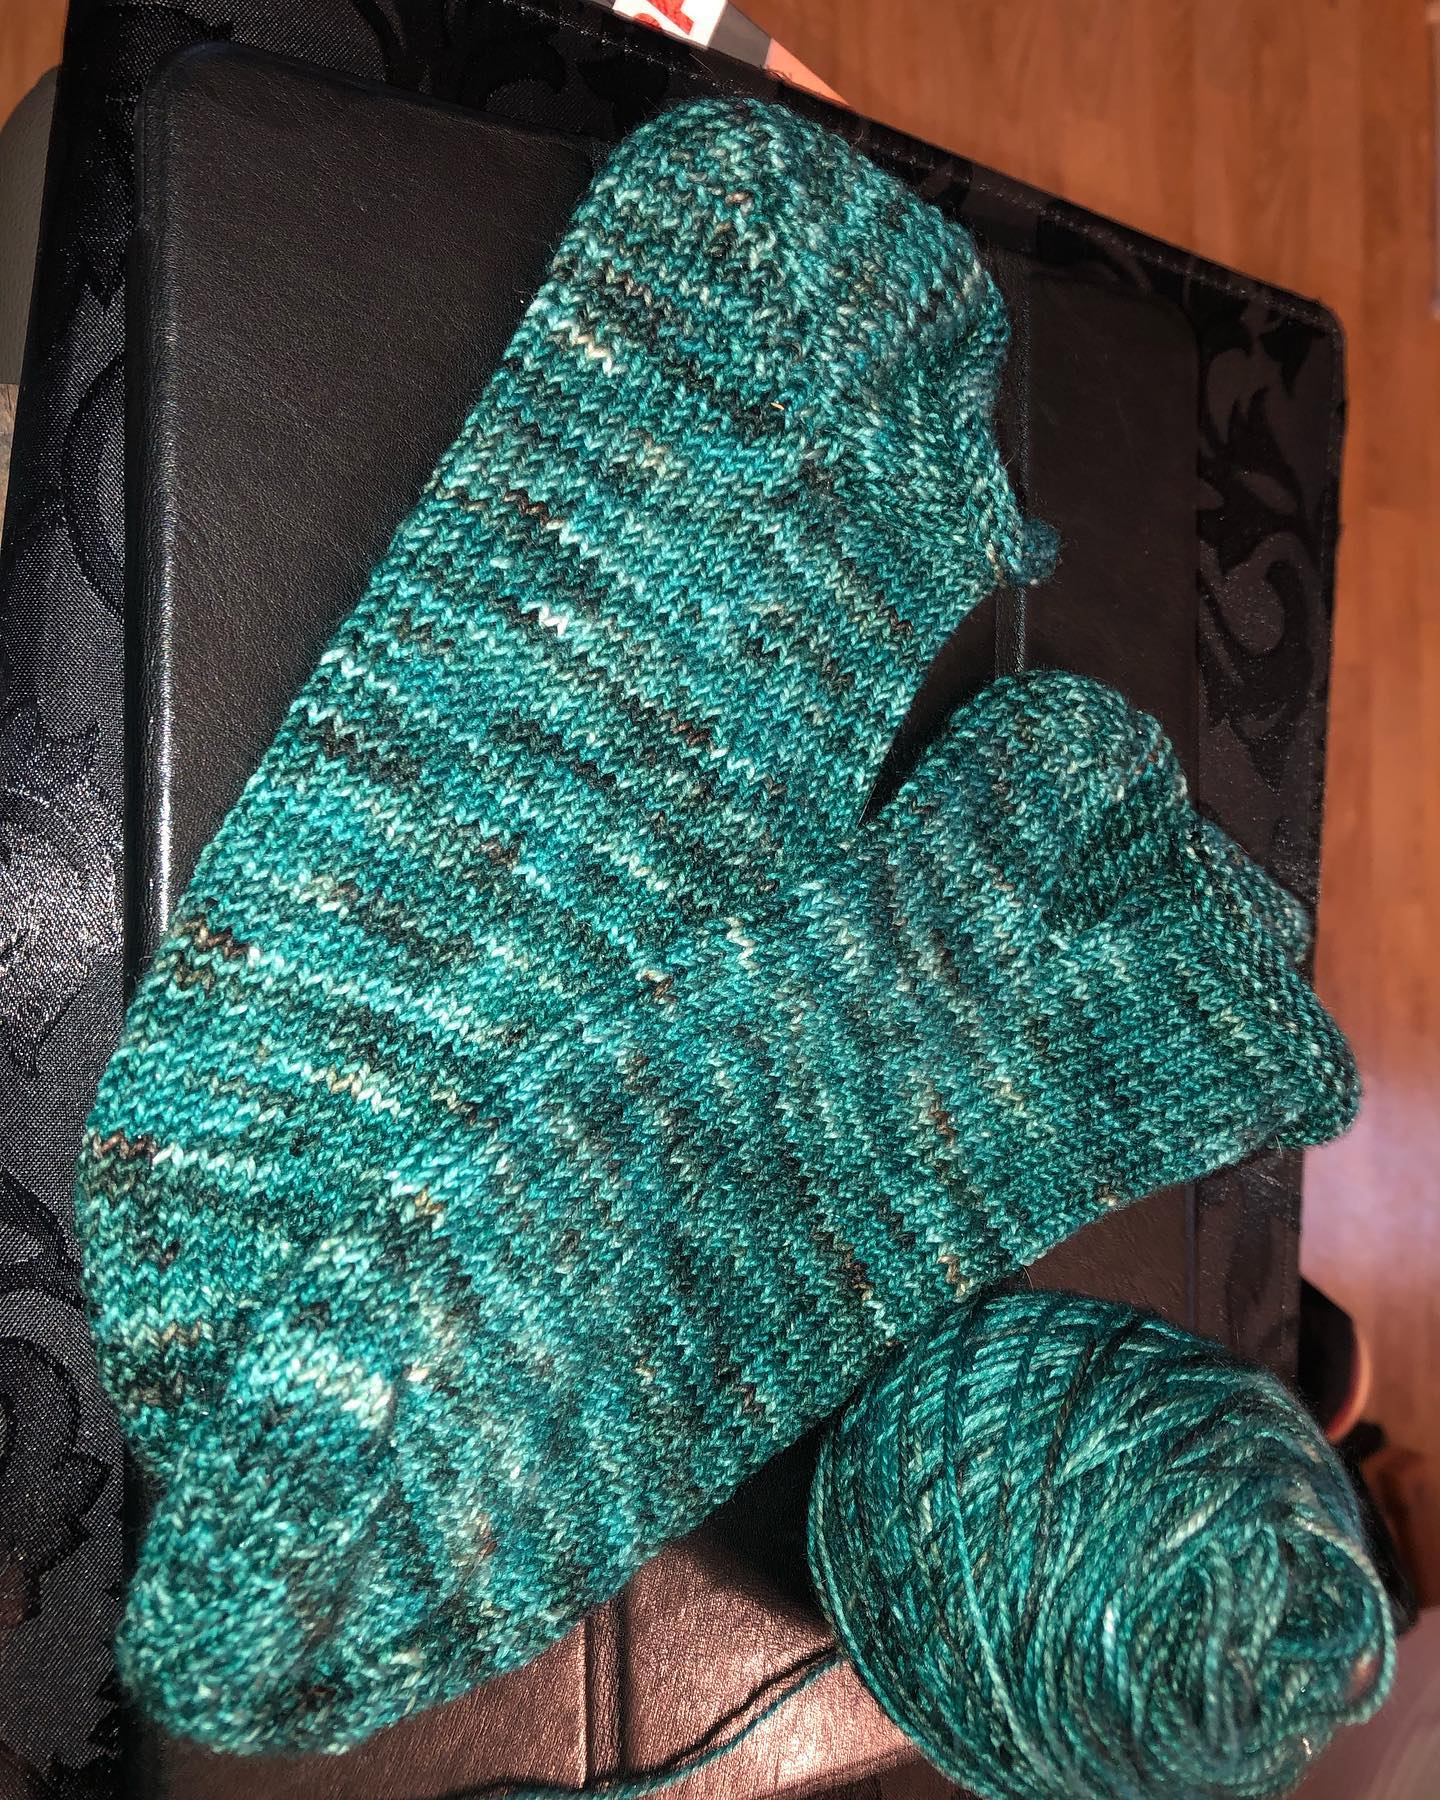 Meine sneaker für den #wolfsockenschafekal von @_sarahlinde_ sind fertig. Diesmal einfache stinos , die lassen sich nämlich super im Bus stricken 😬 
#knitting #knittersofinstagram #knittinglove #knittingsocks #stinos #sneaker #green #socken #strickenistmeinyoga #strickenmachtglücklich #stricken #sockenstrickengehtimmer #sockenstricken #sockenstrickenmachtspass #ontheroad #sauerland #menden #strickenistwiezaubernkönnen #strickenmachtsüchtig #strickenistmeinyoga